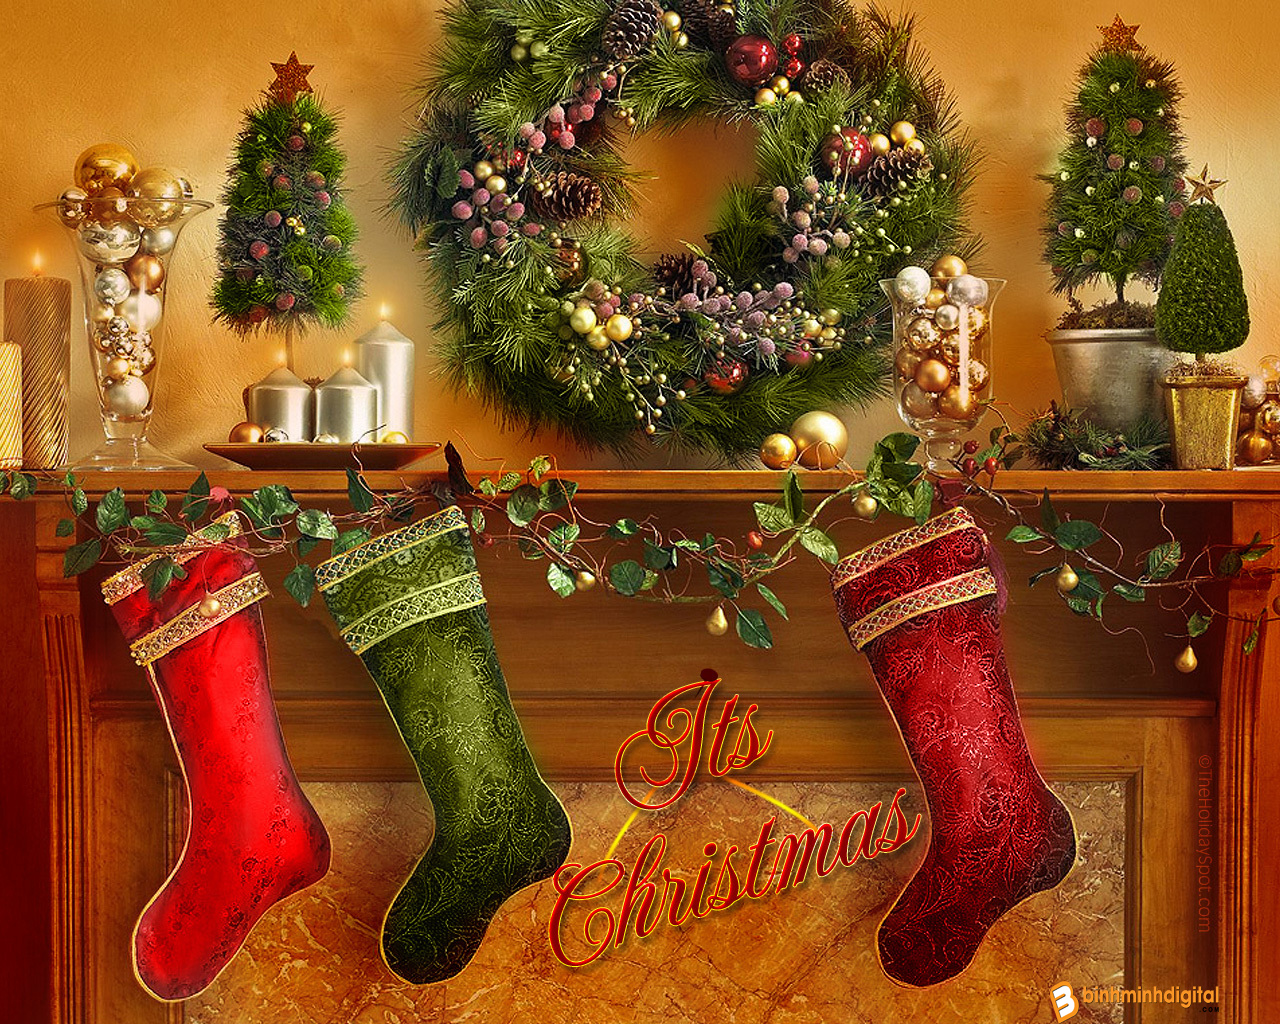 Mùa Giáng sinh đến rồi, hãy cùng chúng tôi tìm hiểu và chiêm ngưỡng những bức Ảnh Giáng sinh đẹp nhất. Ảnh tràn đầy tình cảm và niềm vui sẽ giúp bạn đón nhận một mùa lễ hội ấm áp và ngập tràn hạnh phúc.